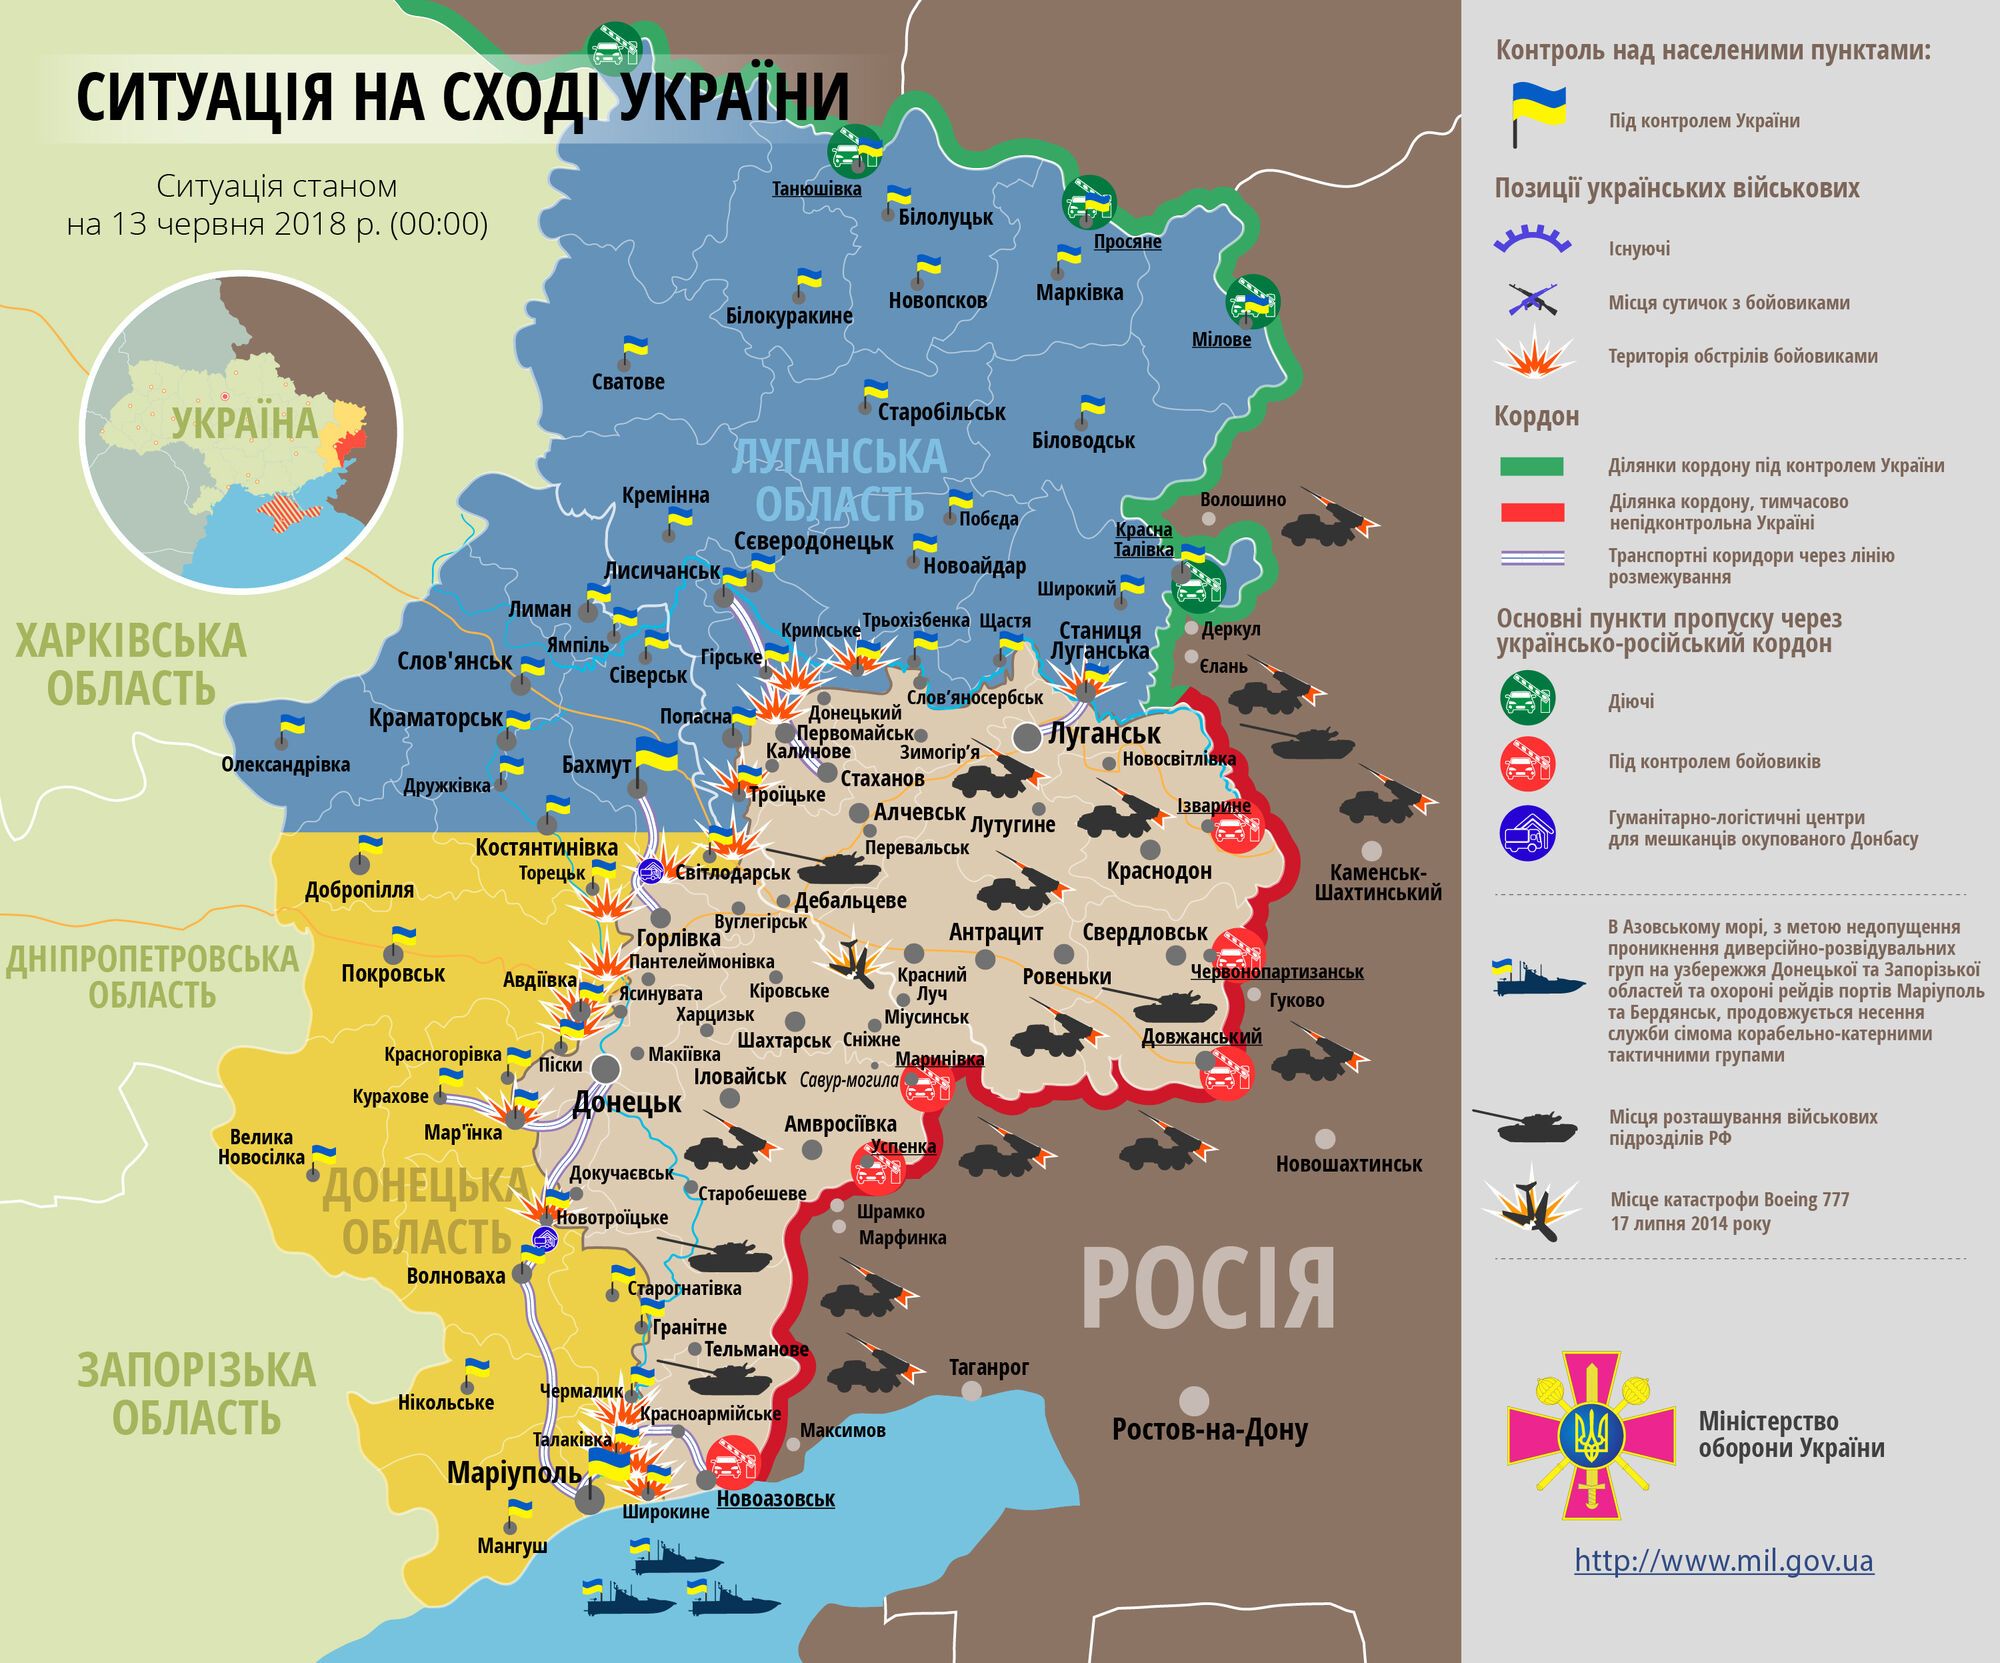  "Л/ДНР" безуспешно атаковали ВСУ на Донбассе: свежие подробности боев